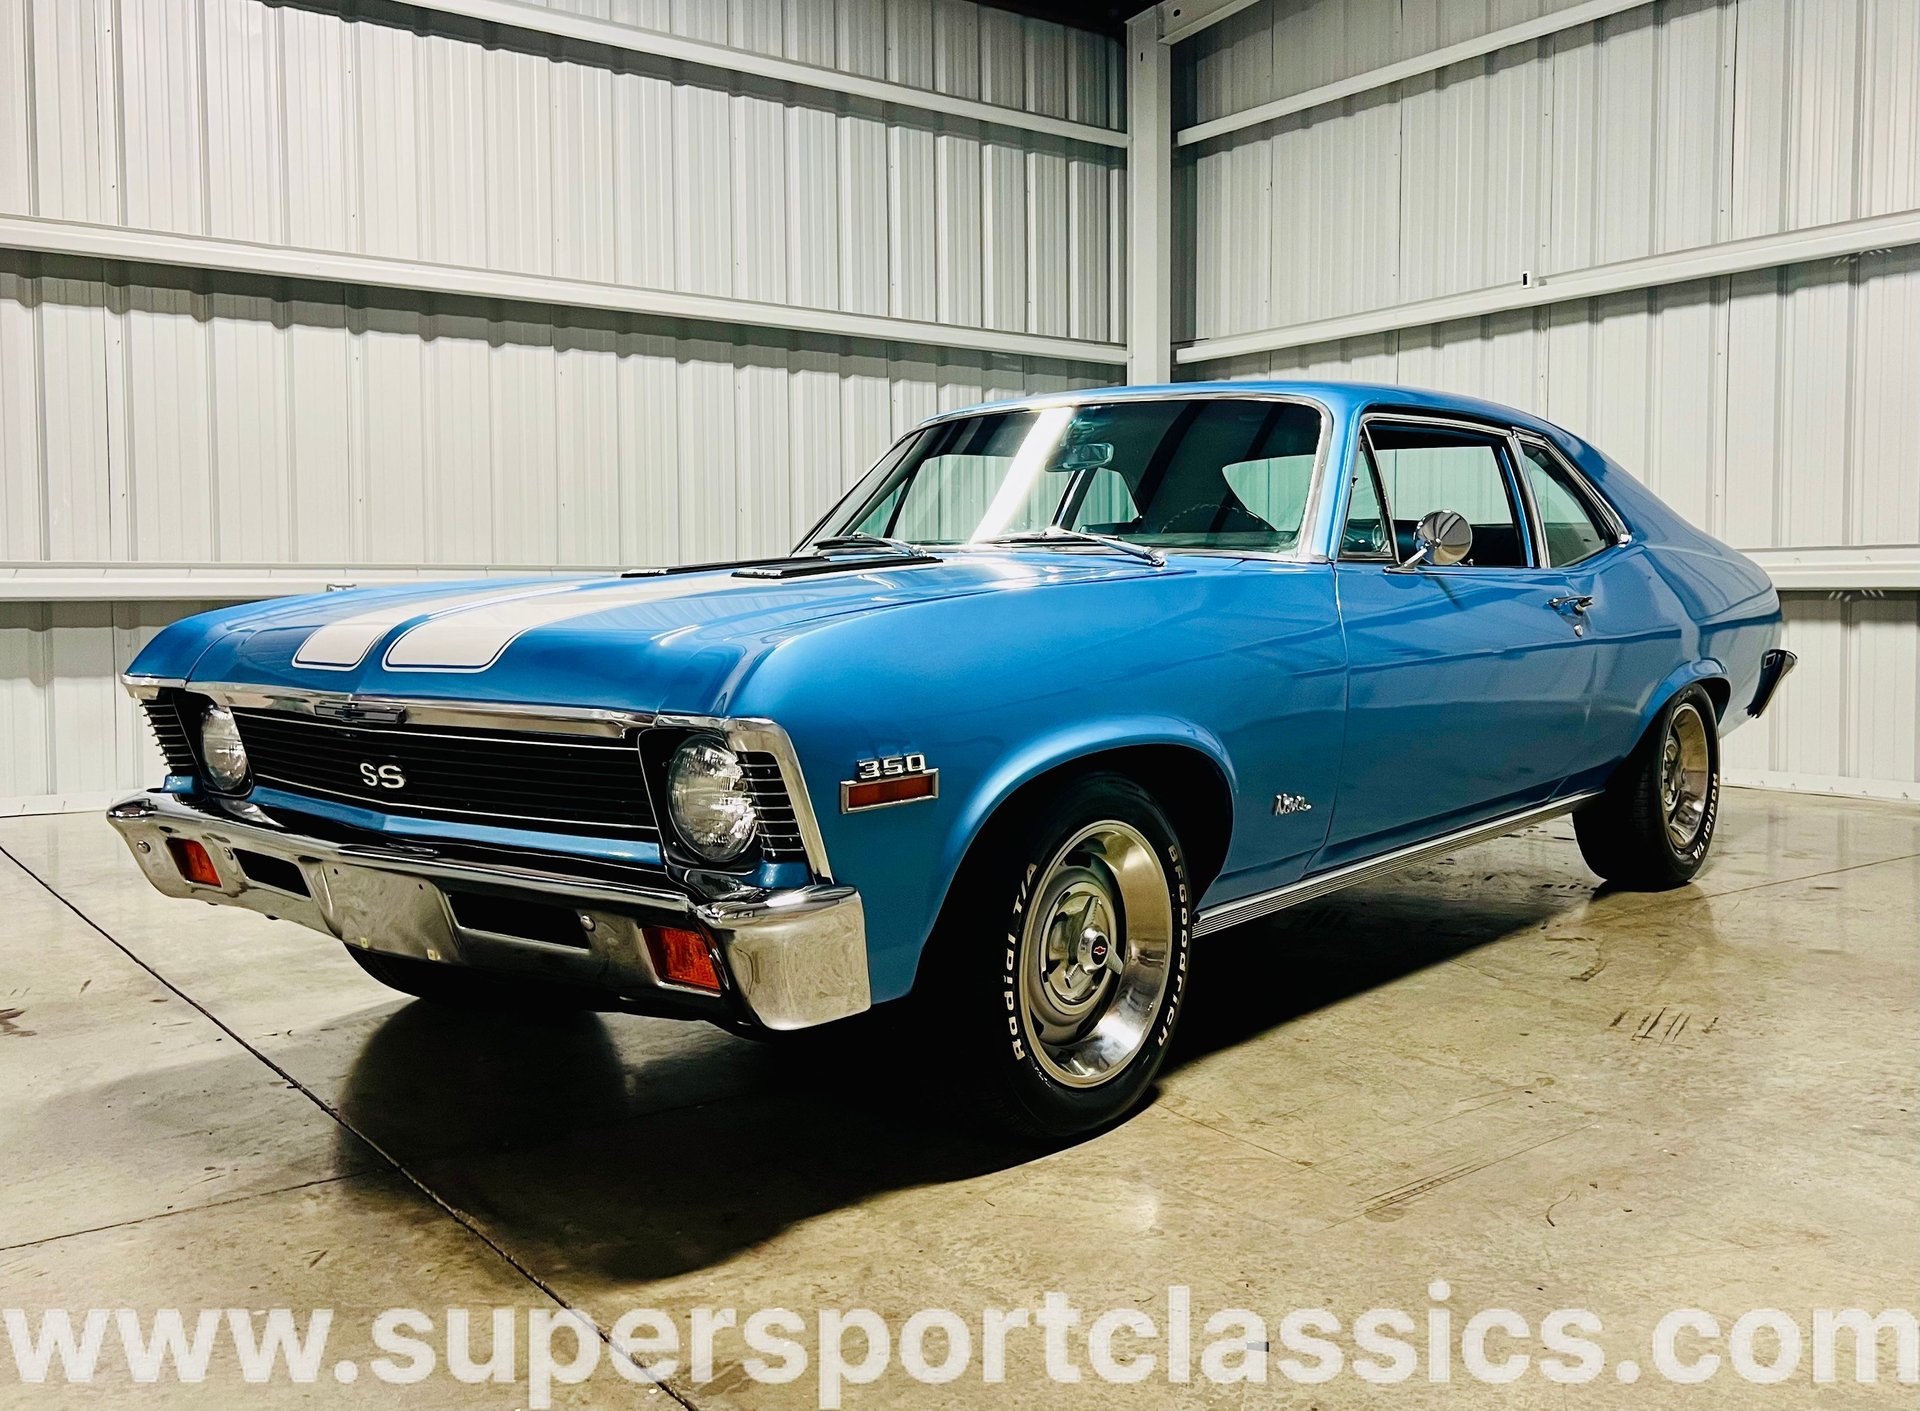 1971 Chevrolet Nova | SuperSport Classics